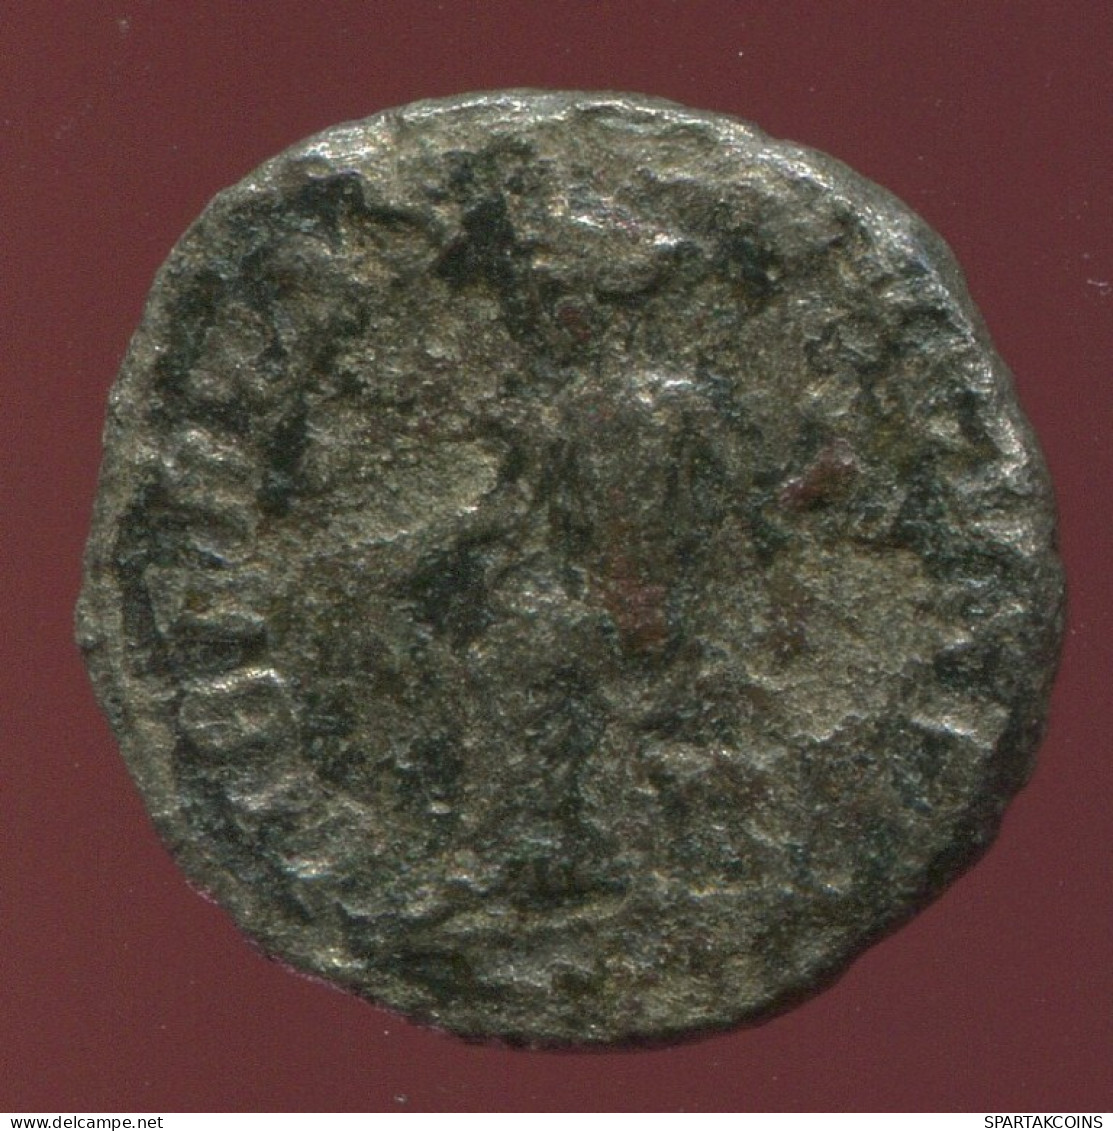 RÖMISCHE PROVINZMÜNZE Roman Provincial Ancient Coin 2.40g/17.01mm #ANT1211.19.D.A - Röm. Provinz